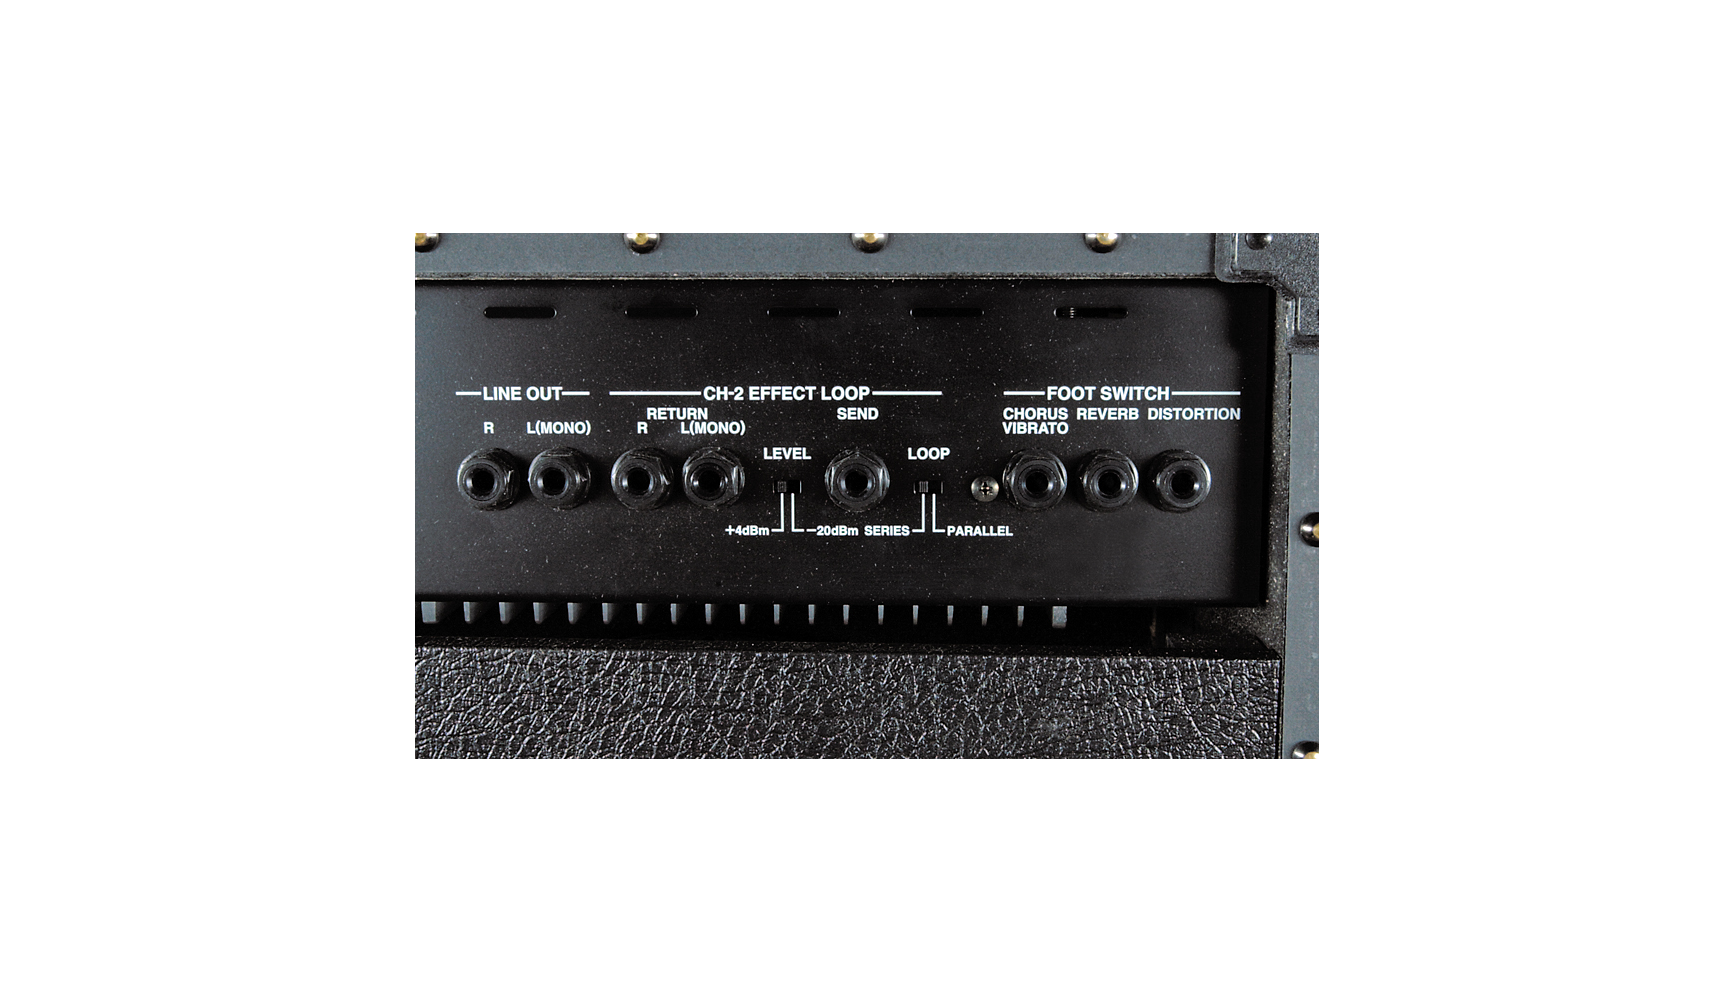 Roland JC-120 Jazz Chorus 2x12" 120-watt Stereo Combo Amp